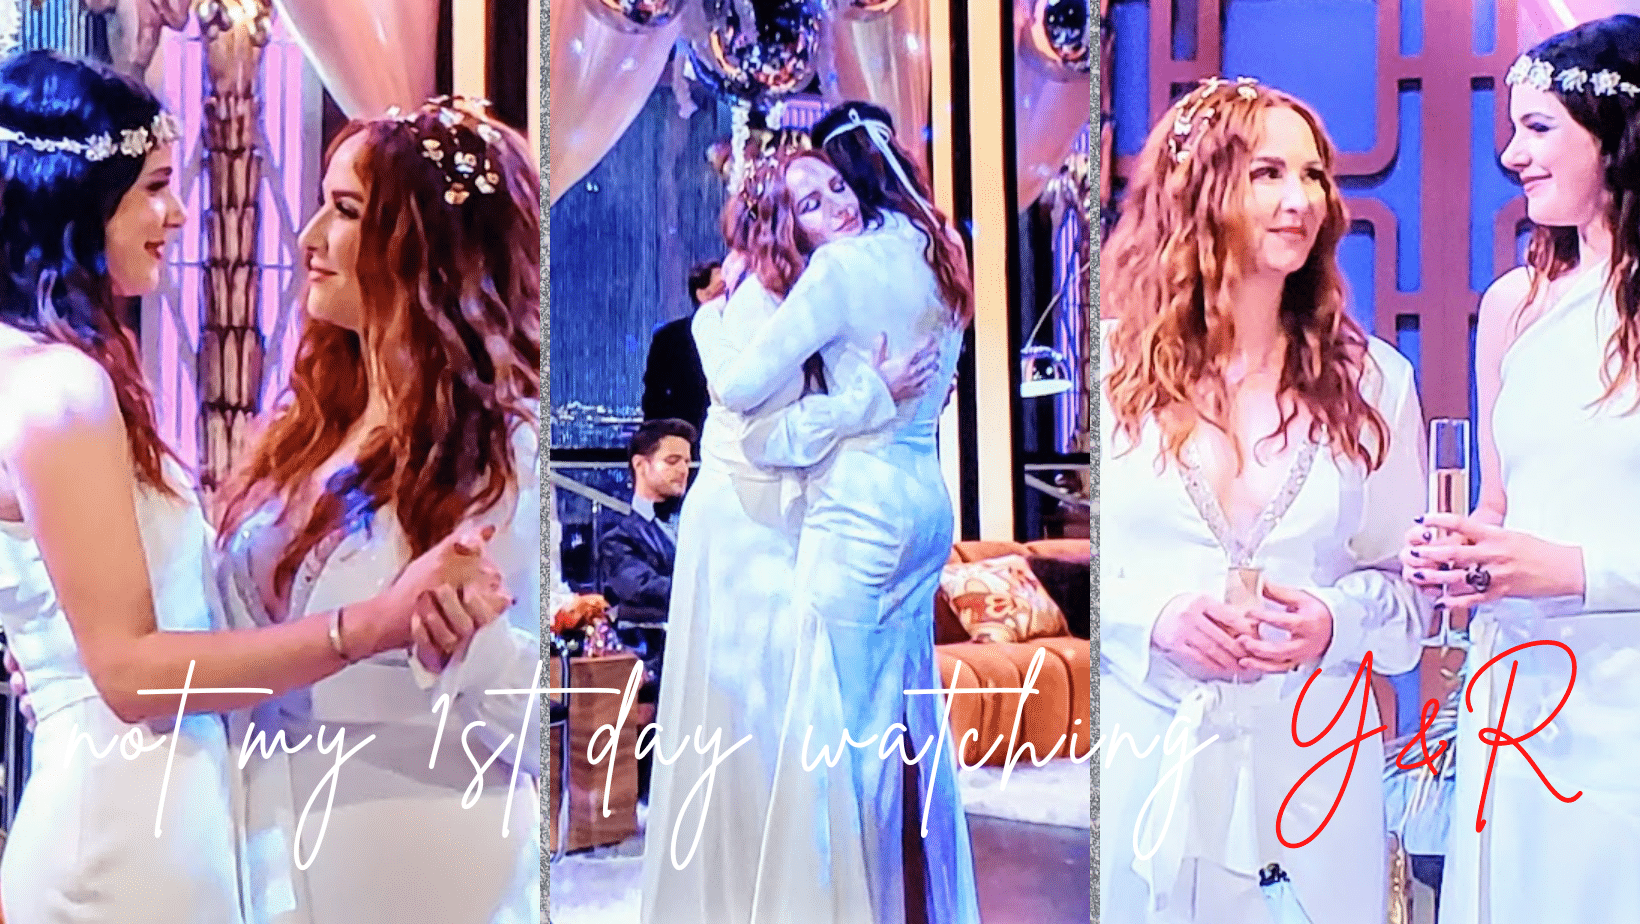 Y&R’s 1st Lesbian Wedding, Tessa & Mariah in Love (Photos)